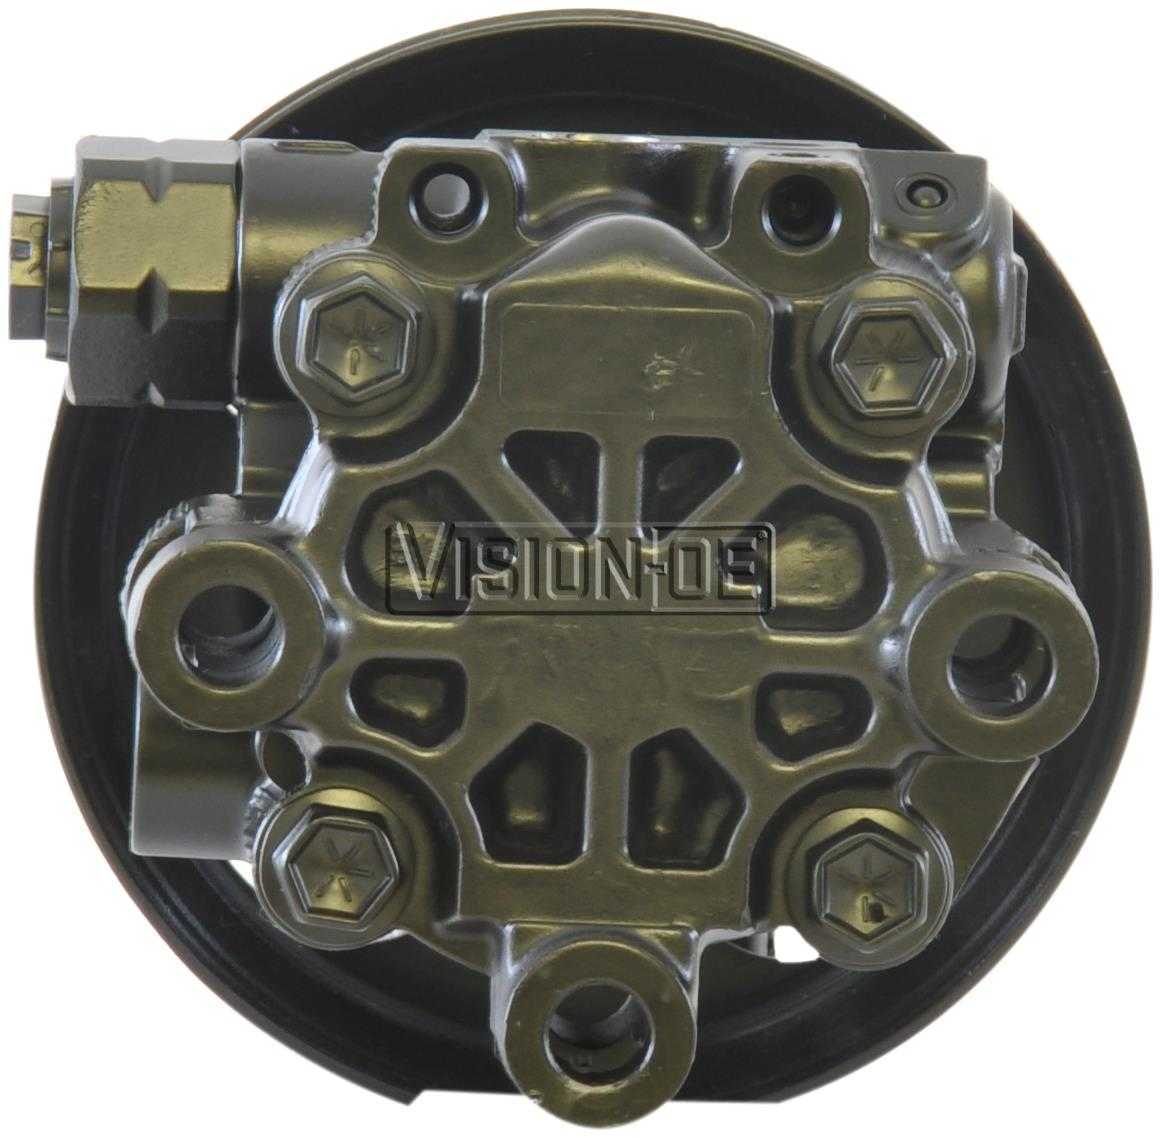 VISION-OE - Reman Power Steering Pump - VOE 990-0950